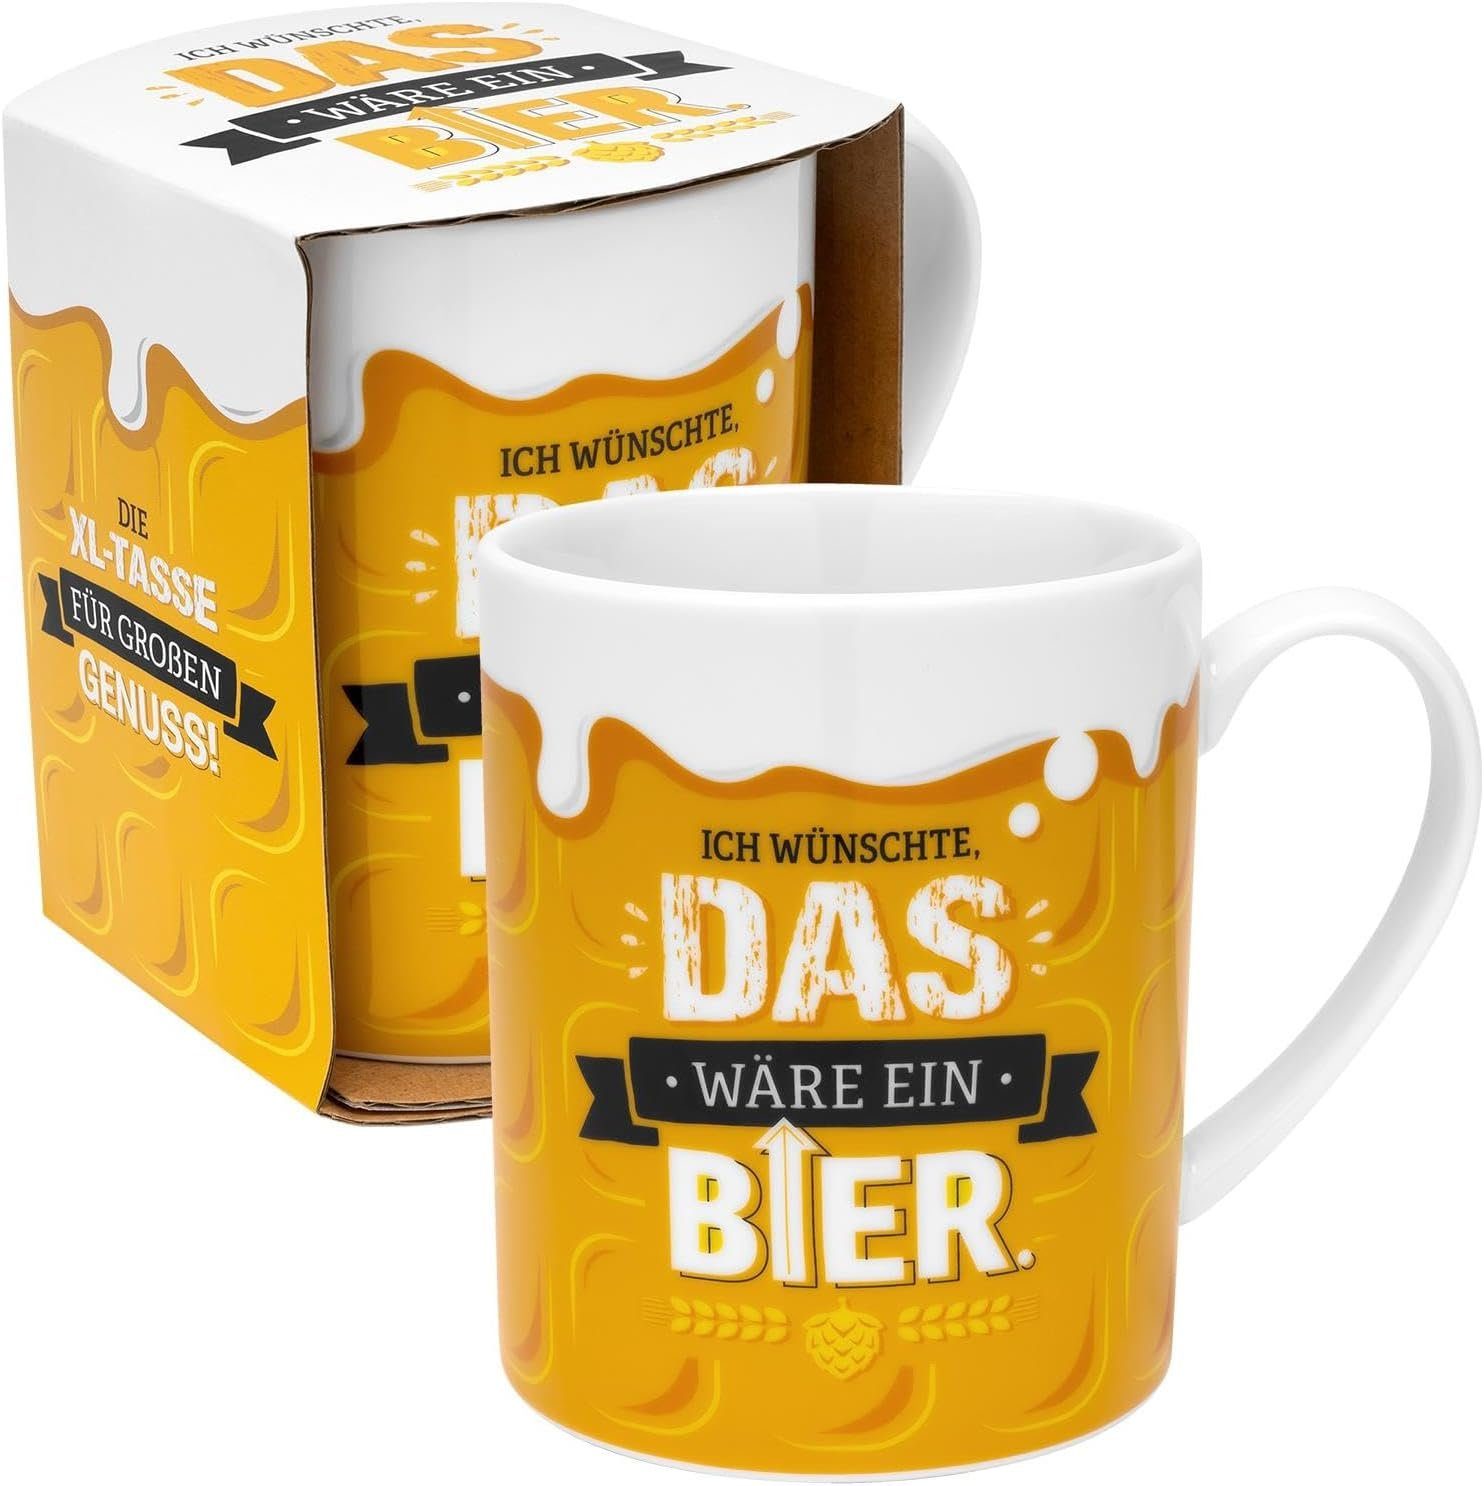 Sheepworld Tasse Kaffeetasse Kaffee Tee Sheepworld 48813 Gruss Porzellan Co, & Material: 60cl Becher Bier XL-Tasse